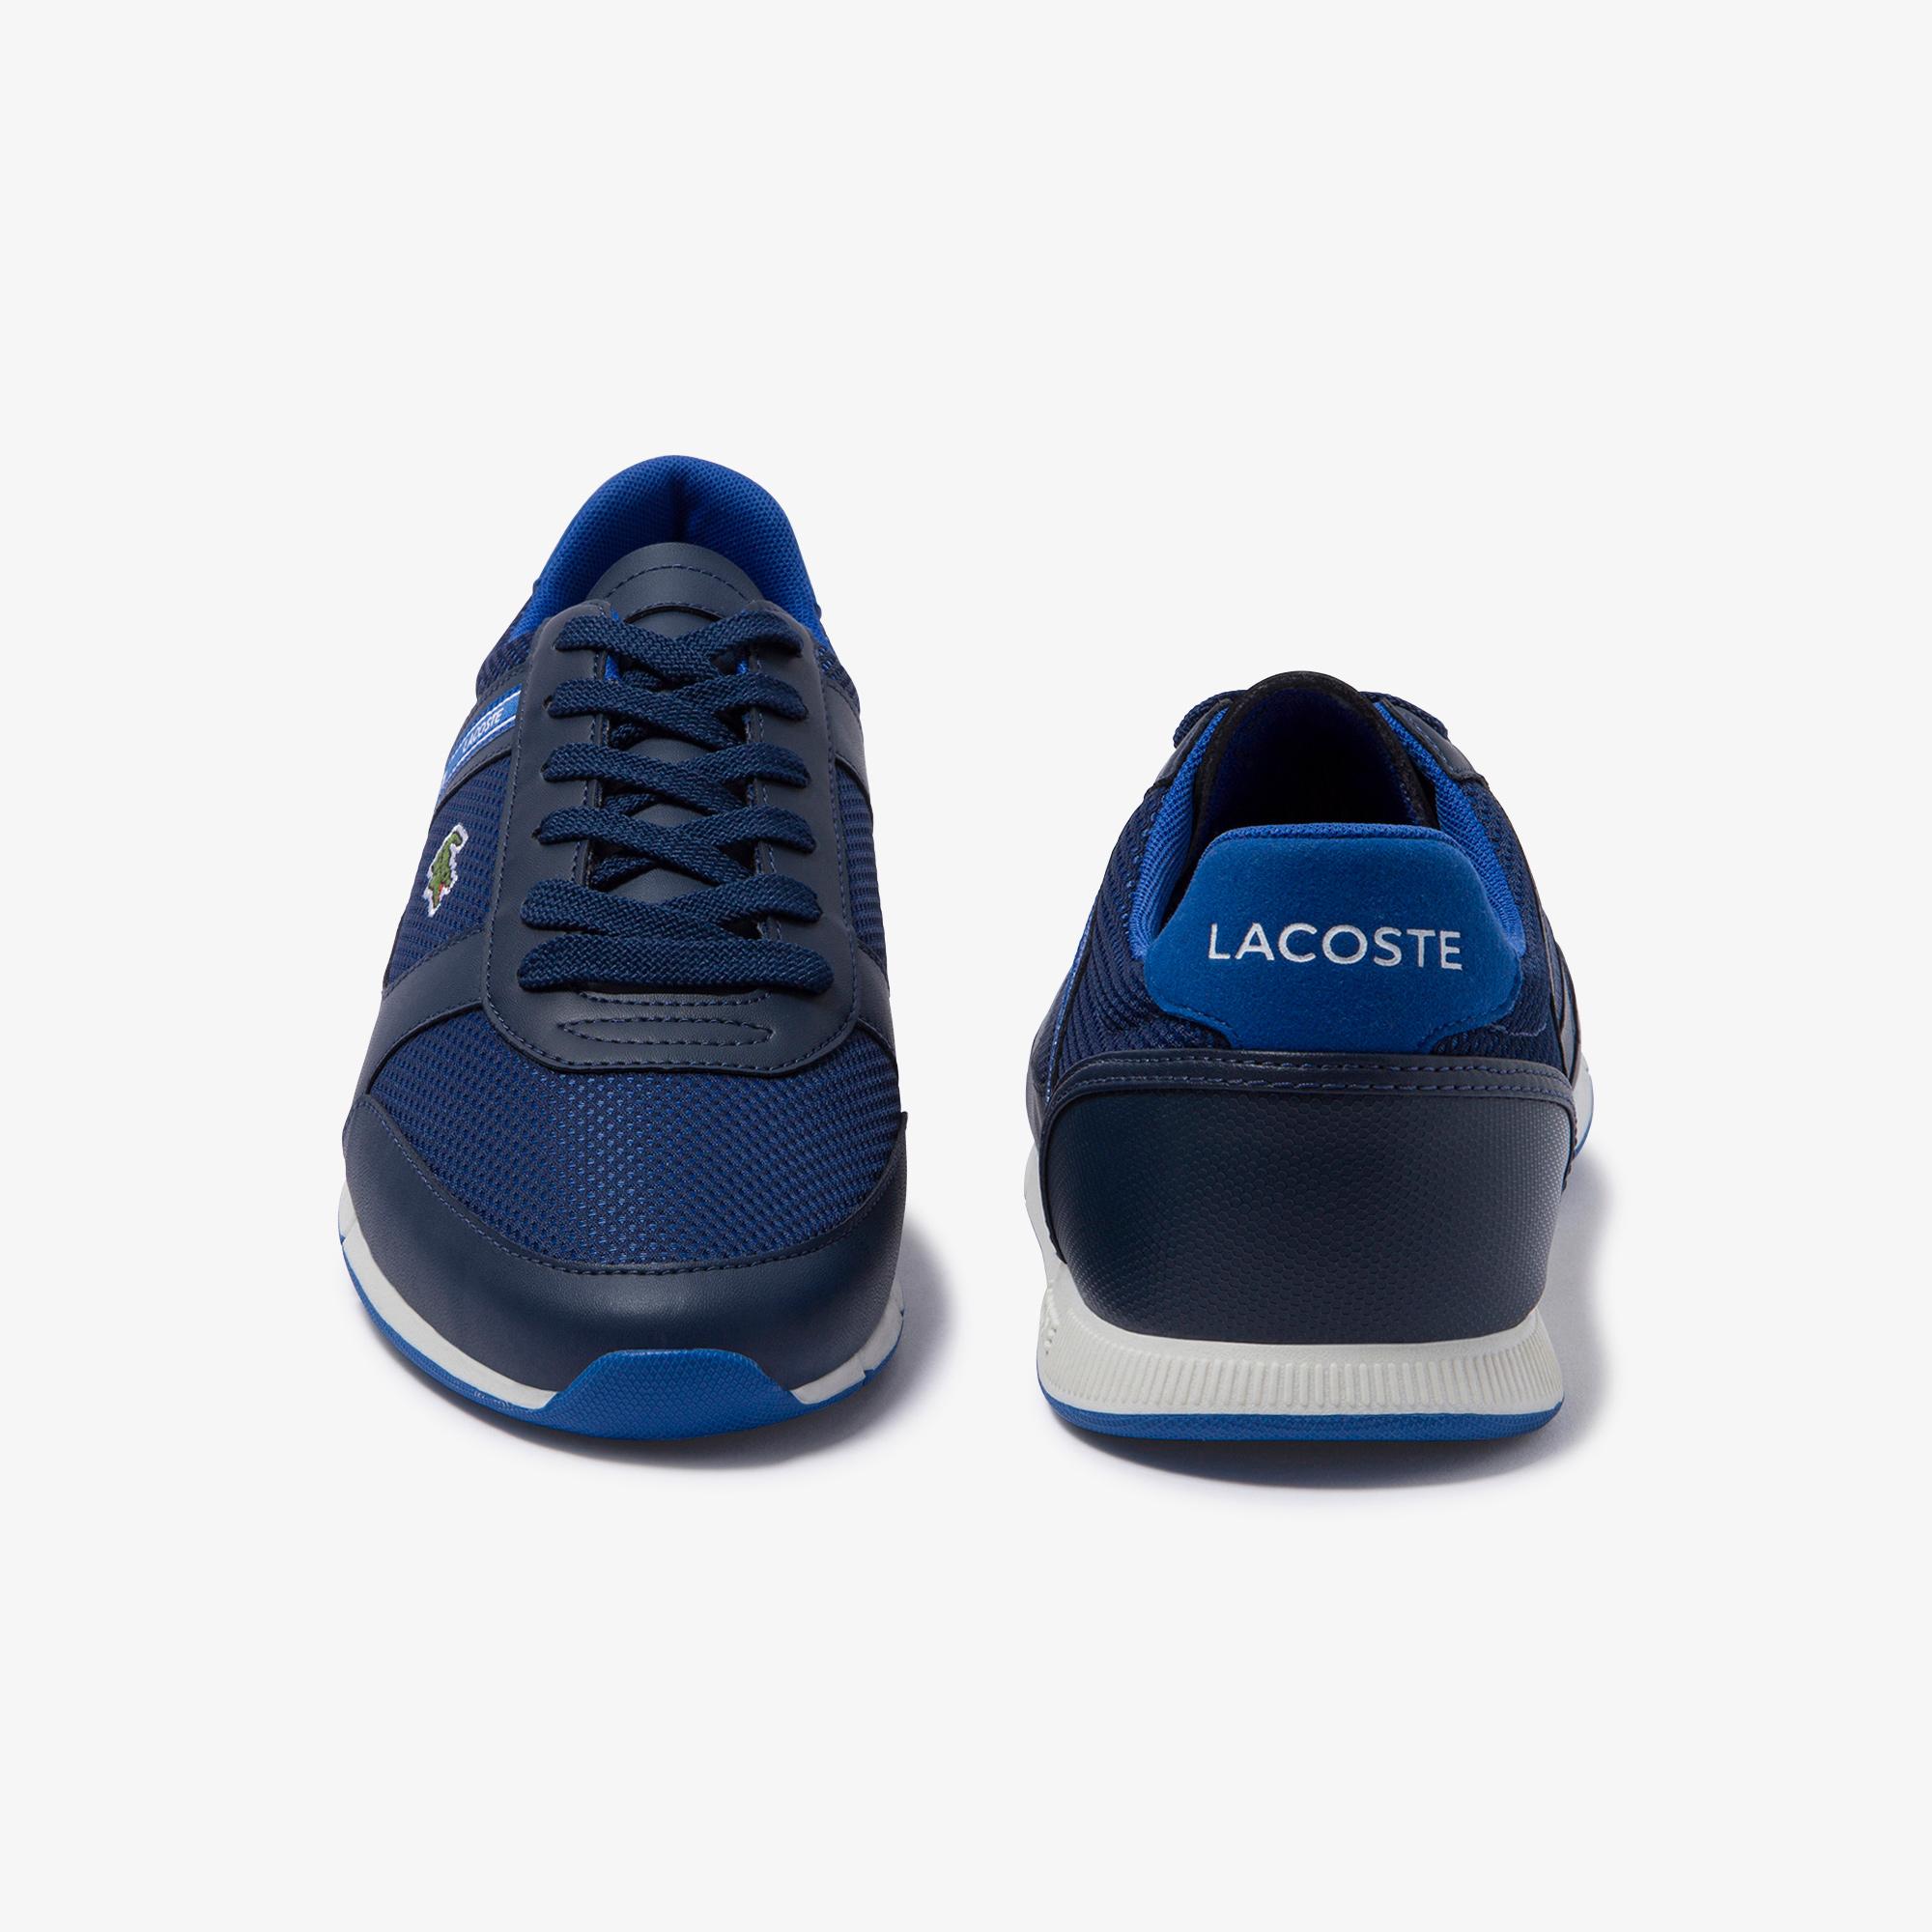 Lacoste Menerva Sport 120 1 Cma Erkek Lacivert - Mavi Ayakkabı. 6